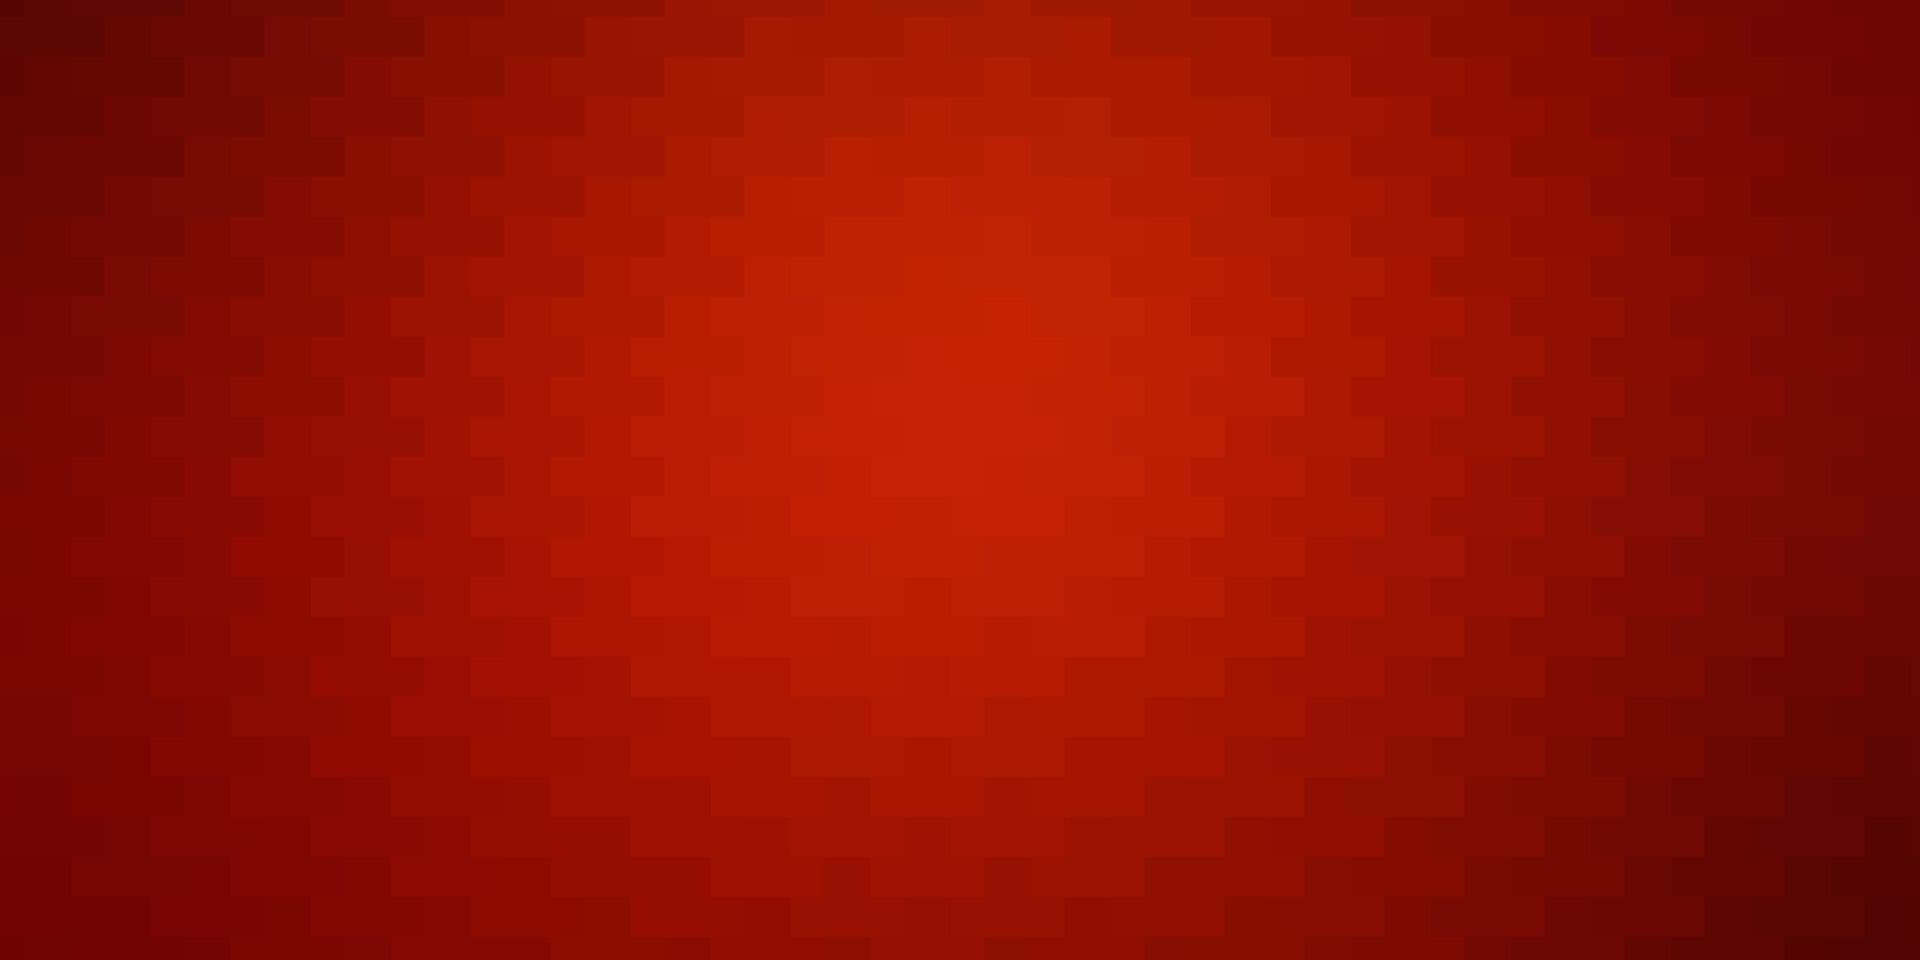 mörk röd, gul vektor bakgrund med rektanglar.